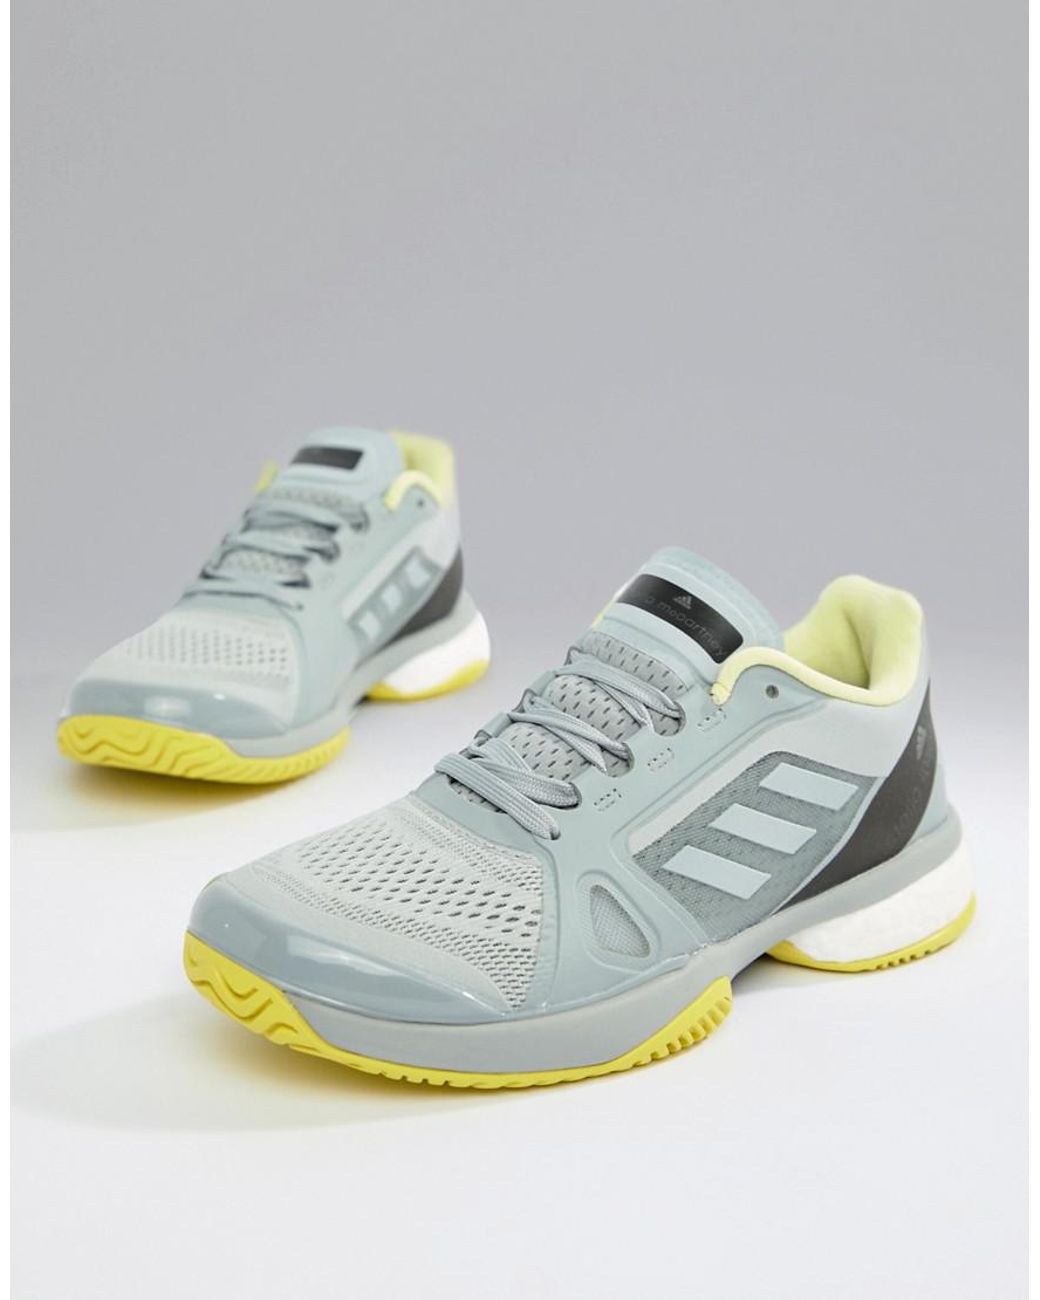 adidas Stella Mccartney Barricade Boost Tennis Sneakers in Grey | Lyst  Canada